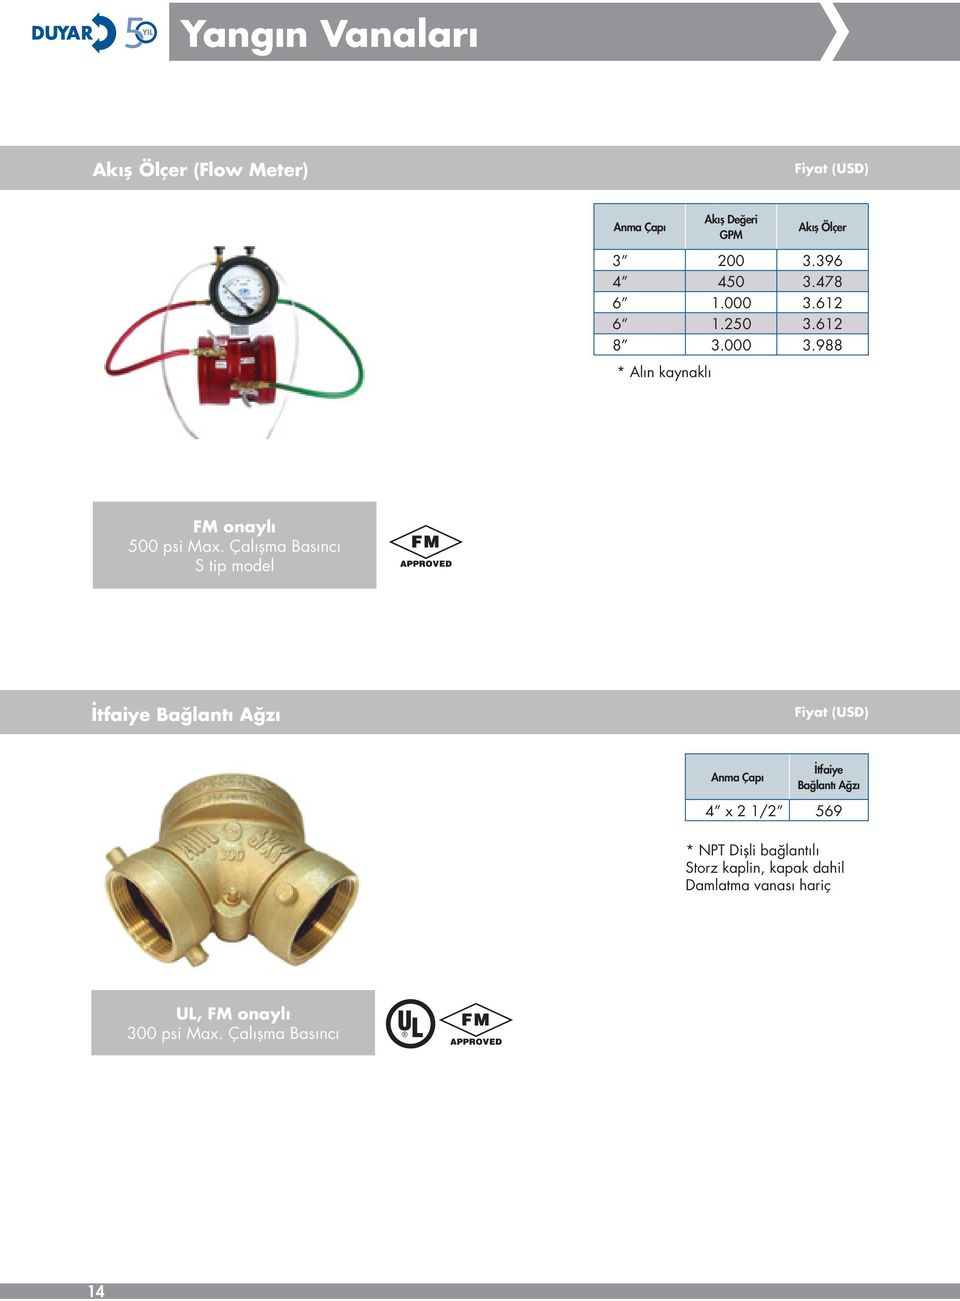 Çalışma Basıncı S tip model İtfaiye Bağlantı Ağzı Fiyat (USD) Anma Çapı İtfaiye Bağlantı Ağzı 4 x 2 1/2